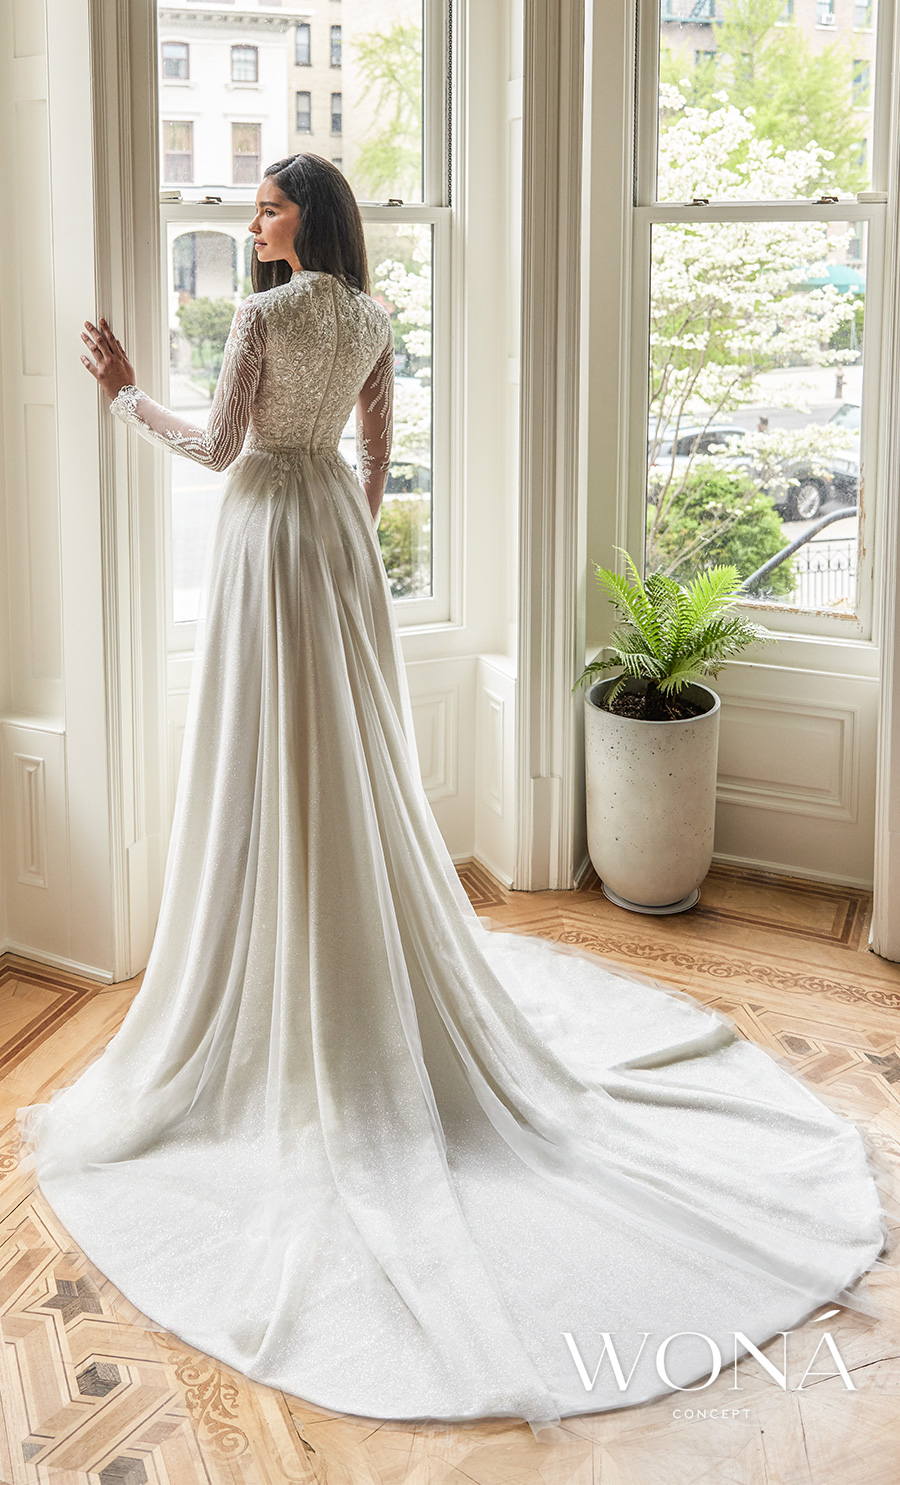 wona 2022 bridal long sleeves round neck heavily embellished bodice glamorous romantic a line wedding dress covered lace back chapel train (elane) bv